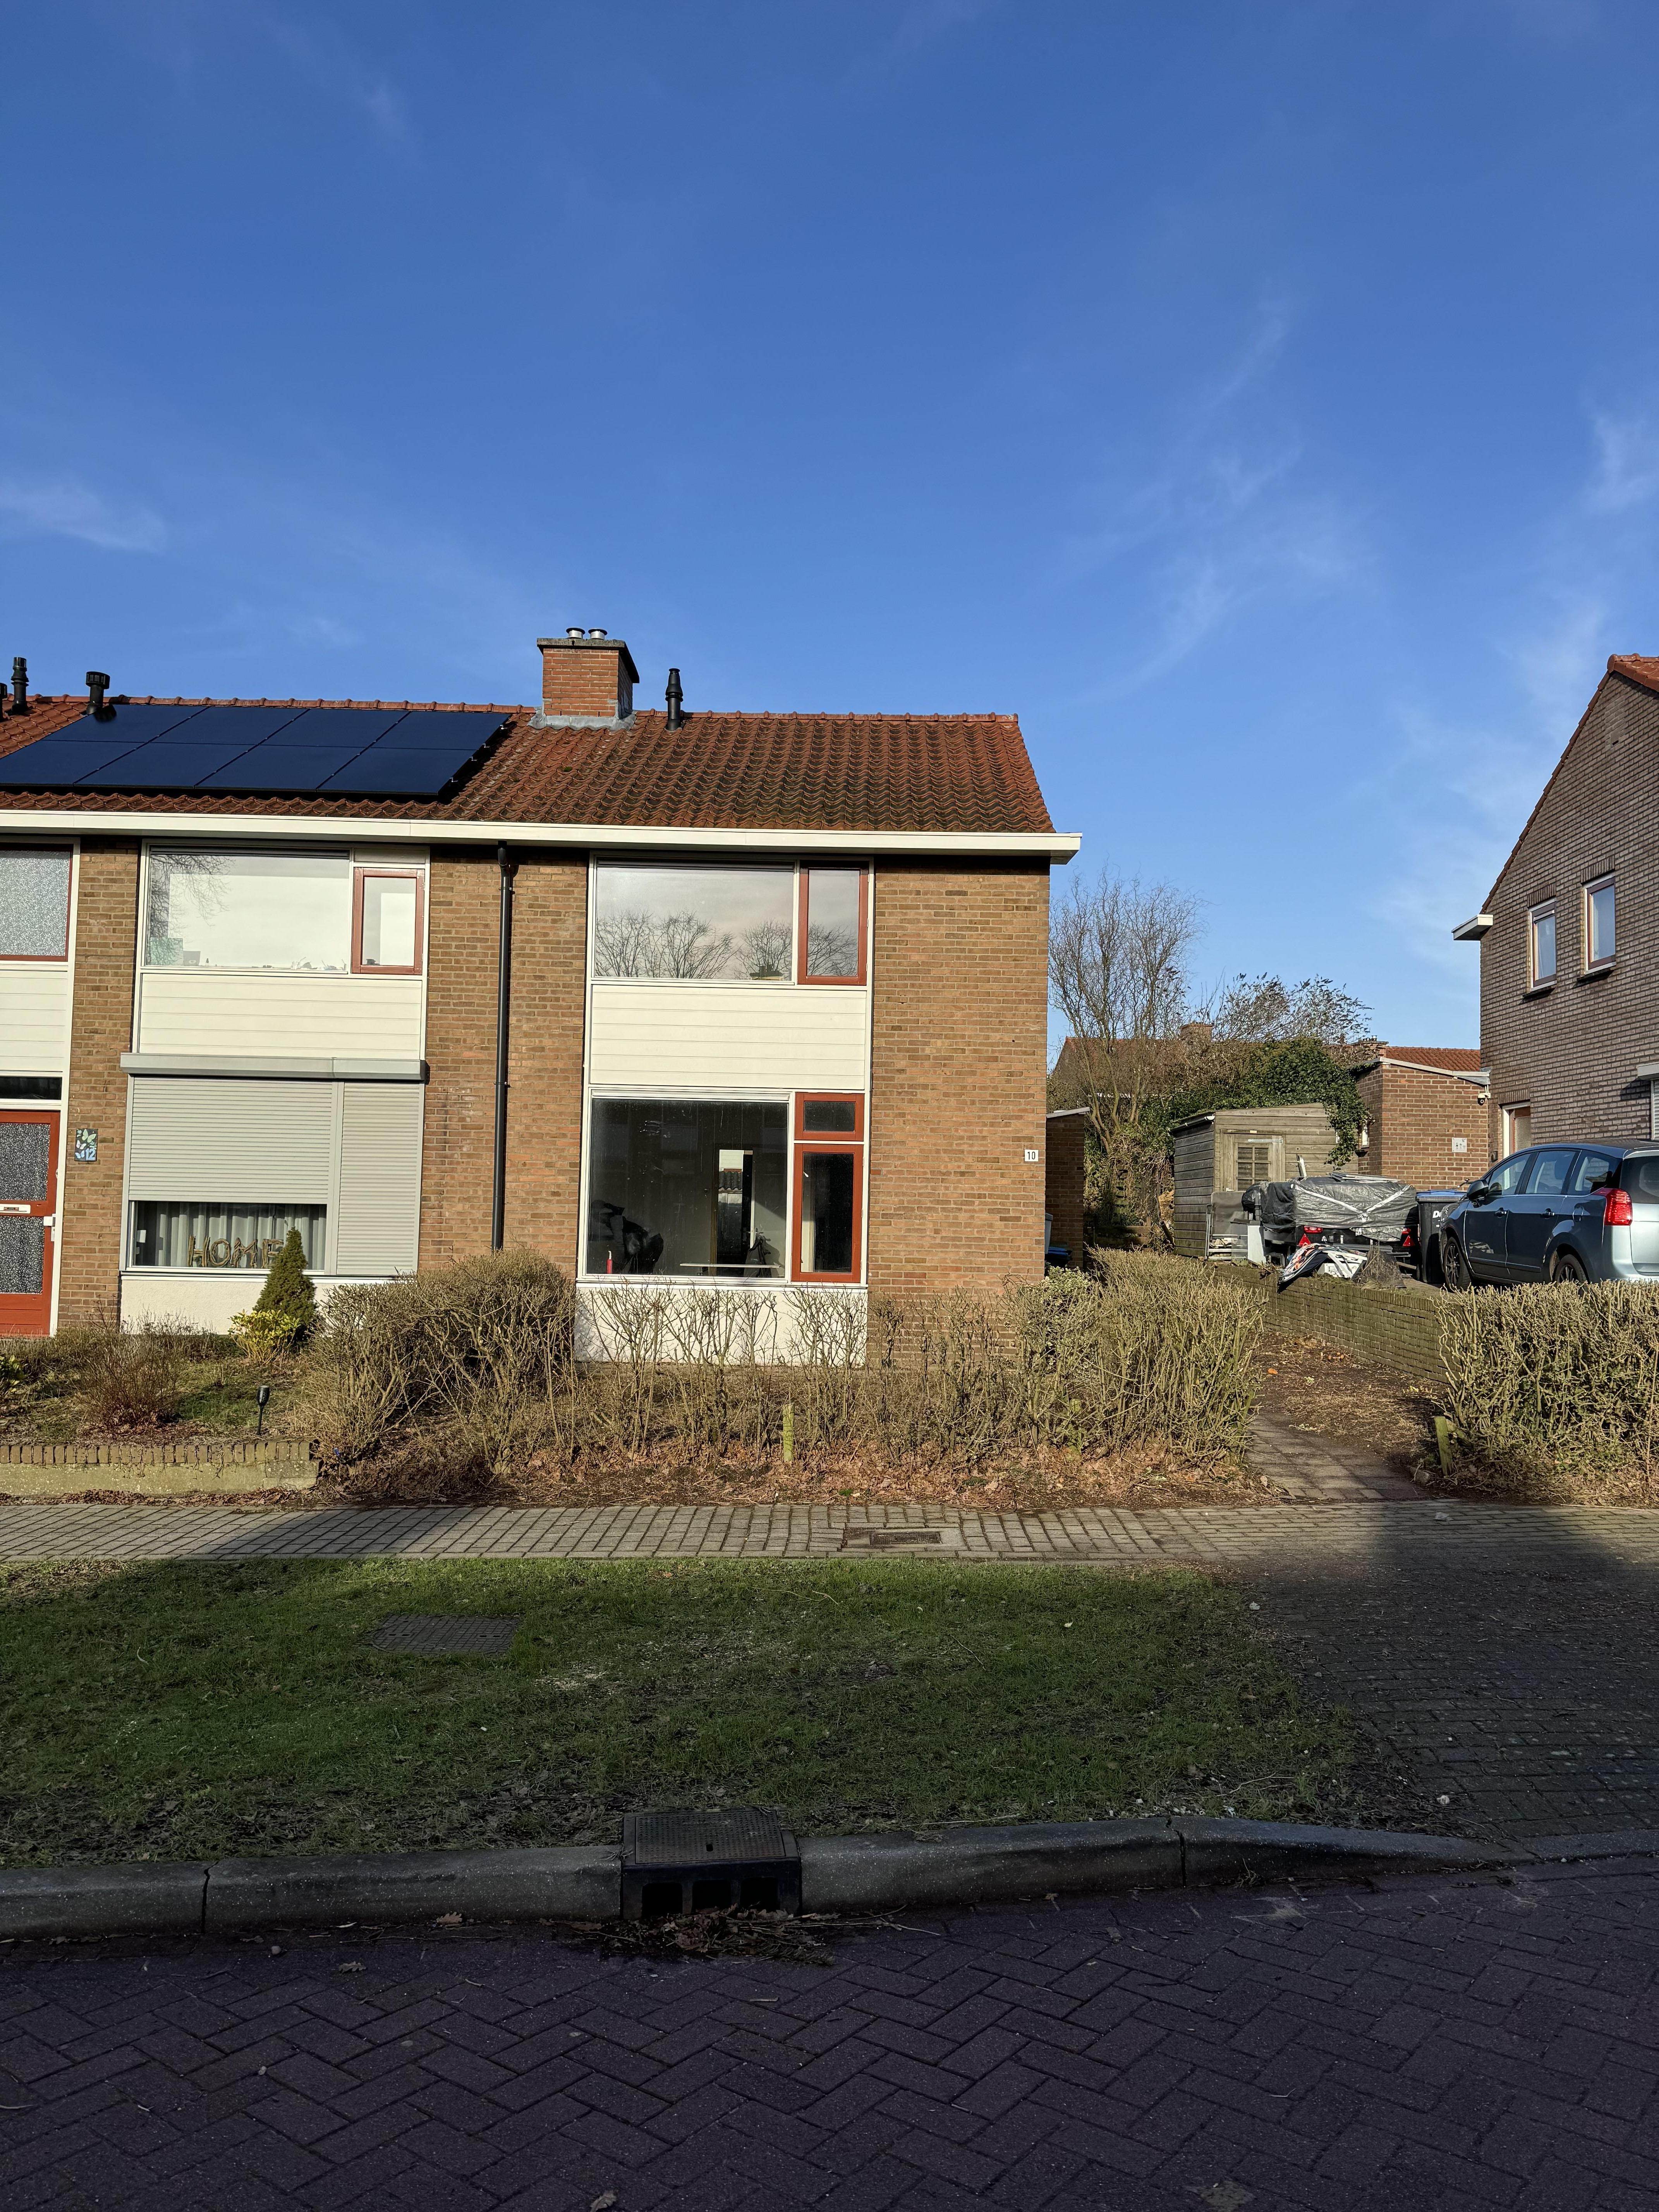 Frambozenstraat 10, 6561 ZM Groesbeek, Nederland